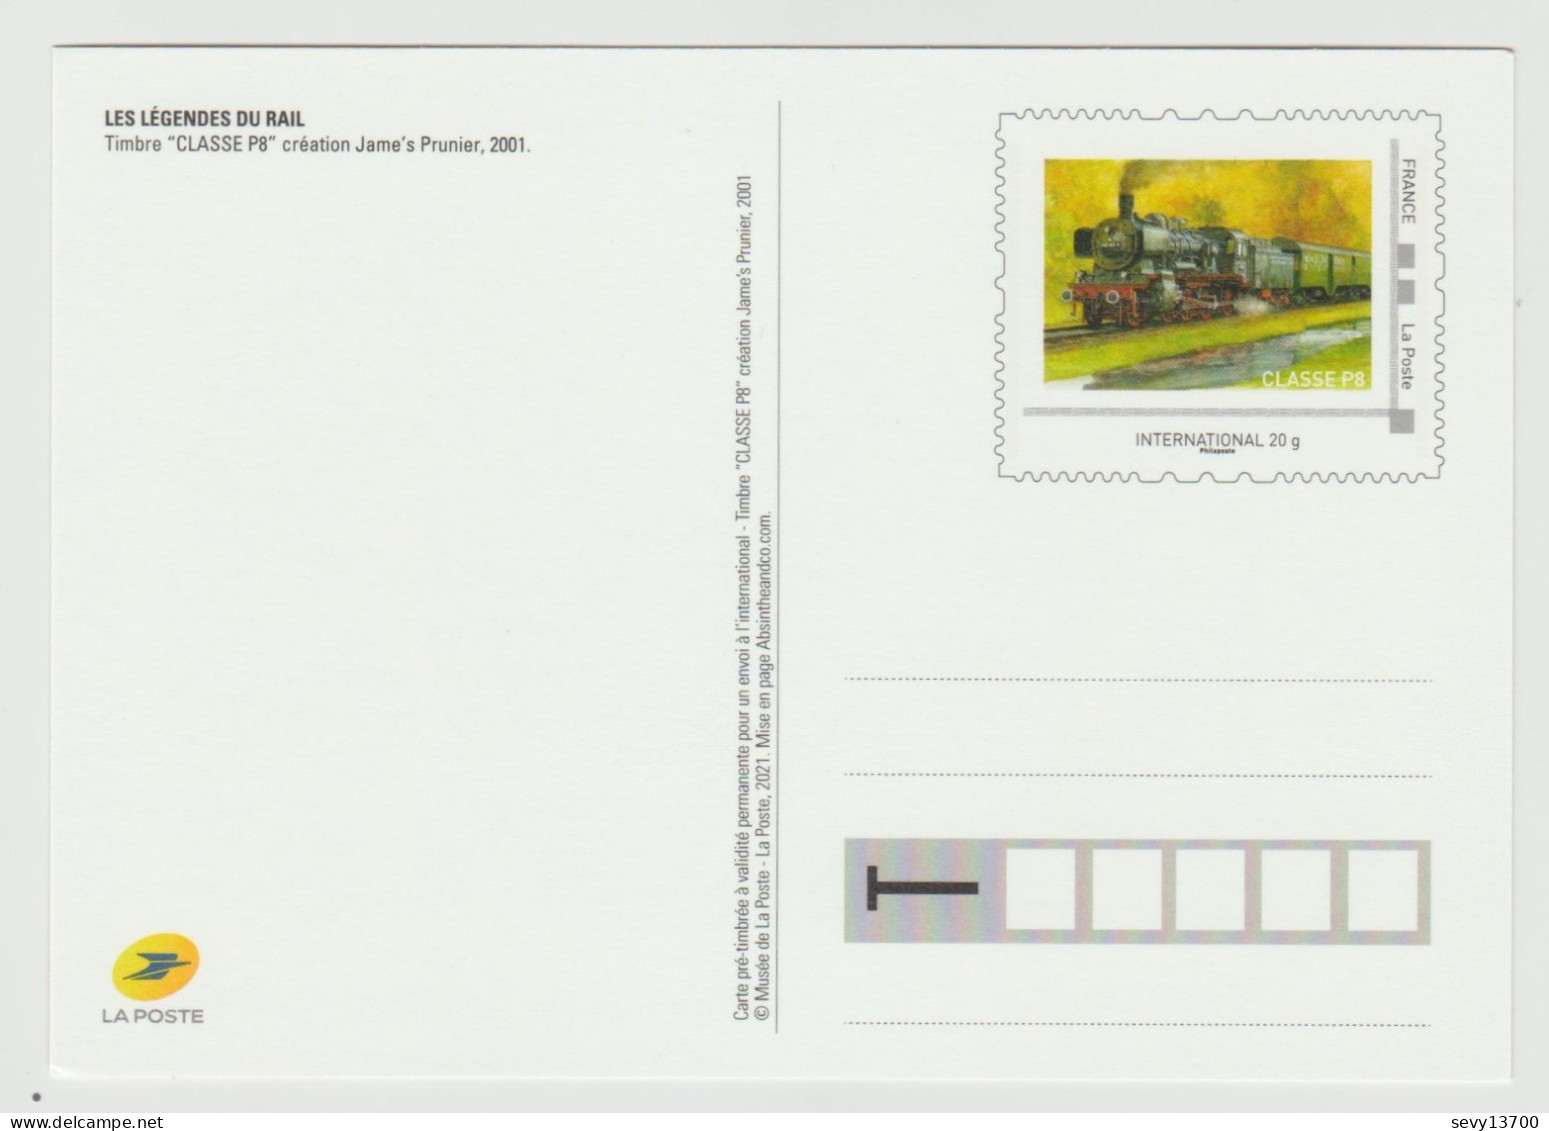 4 PAP Entier Postal Validité internationale La Poste 2022 Légendes du rail Train Crampton